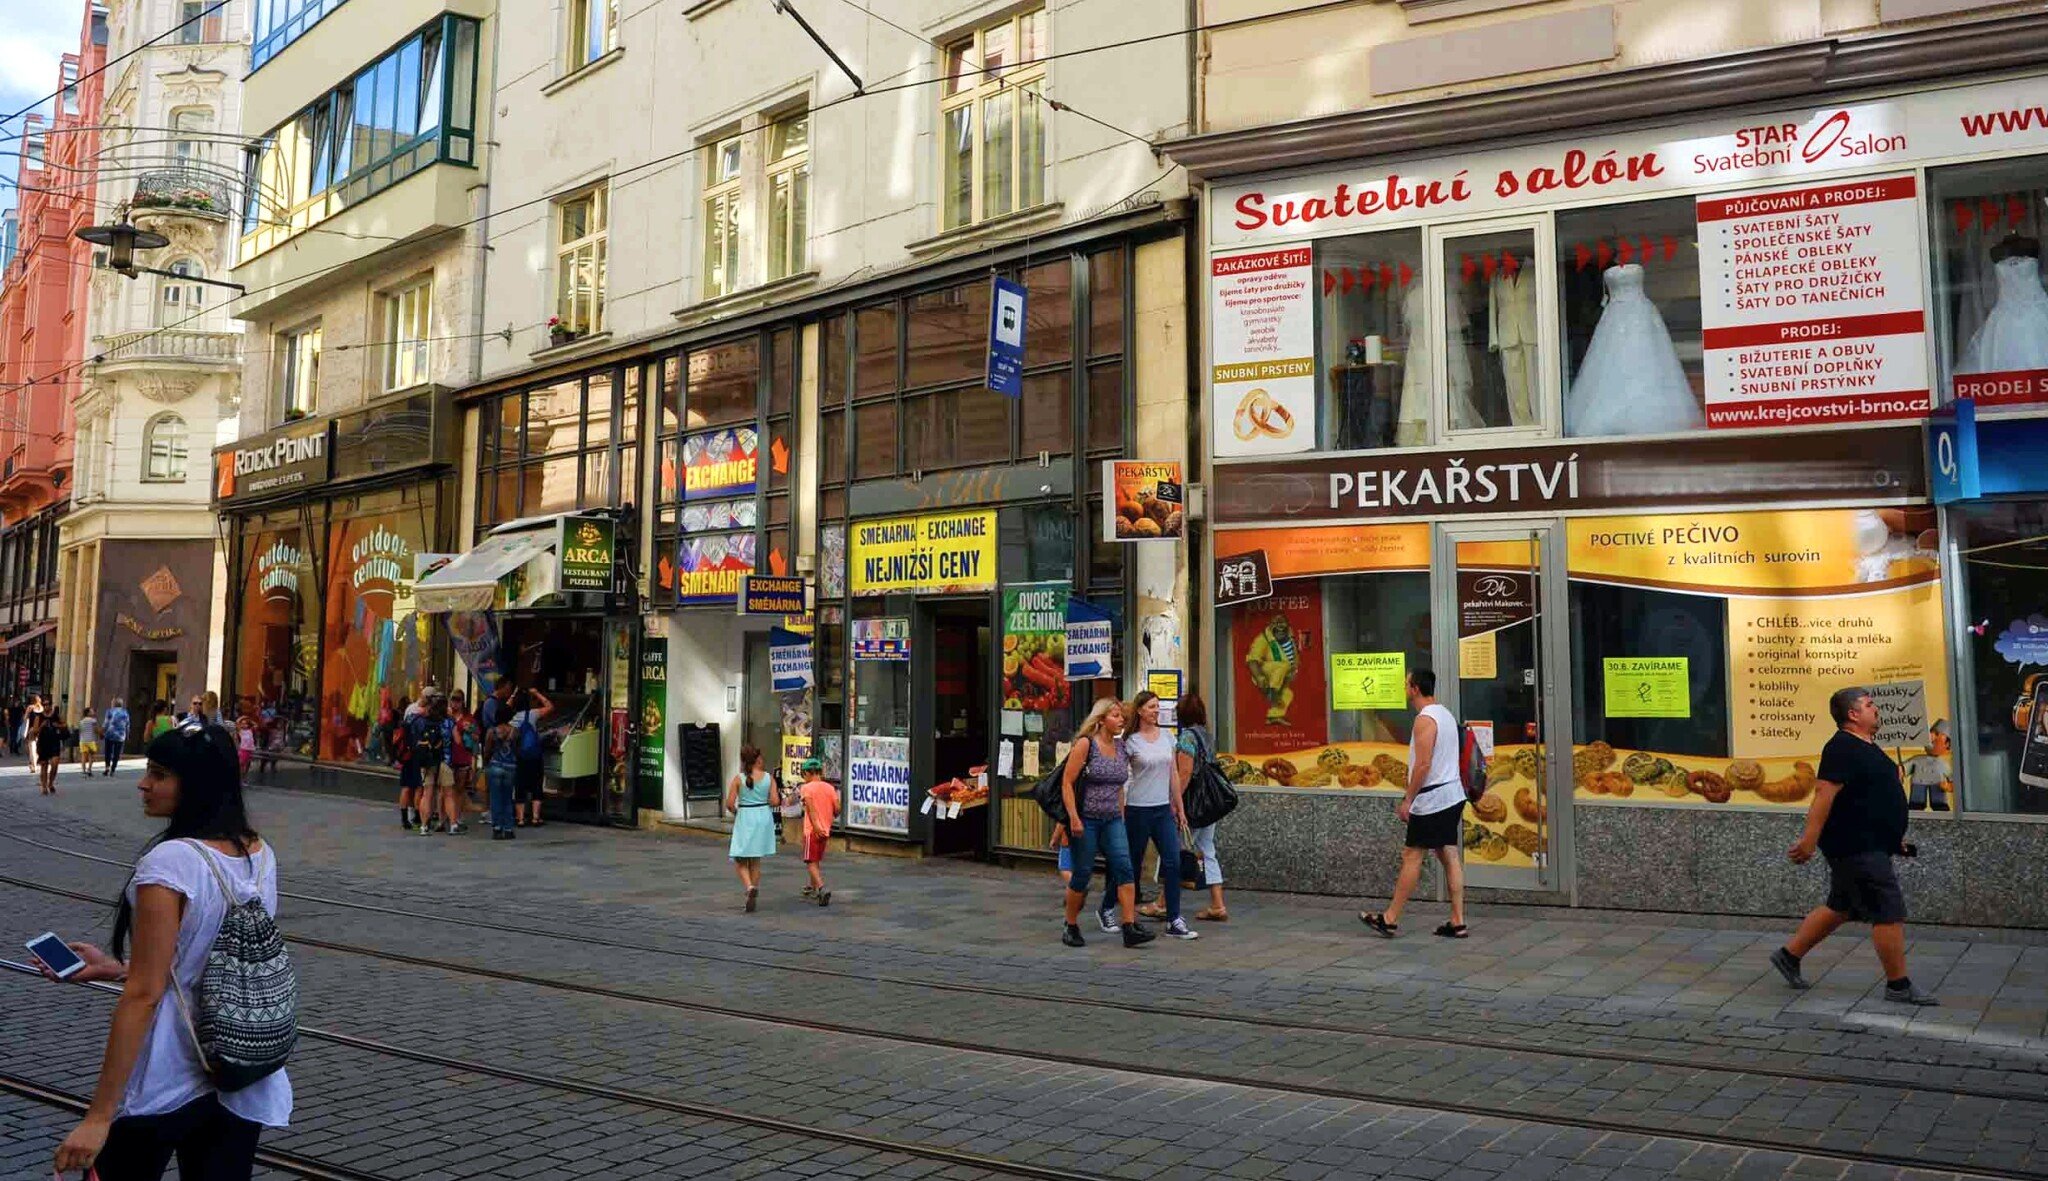 Přes fasádu už ne. Praha po vzoru dalších měst rozšiřuje platnost vyhlášky omezující reklamní smog